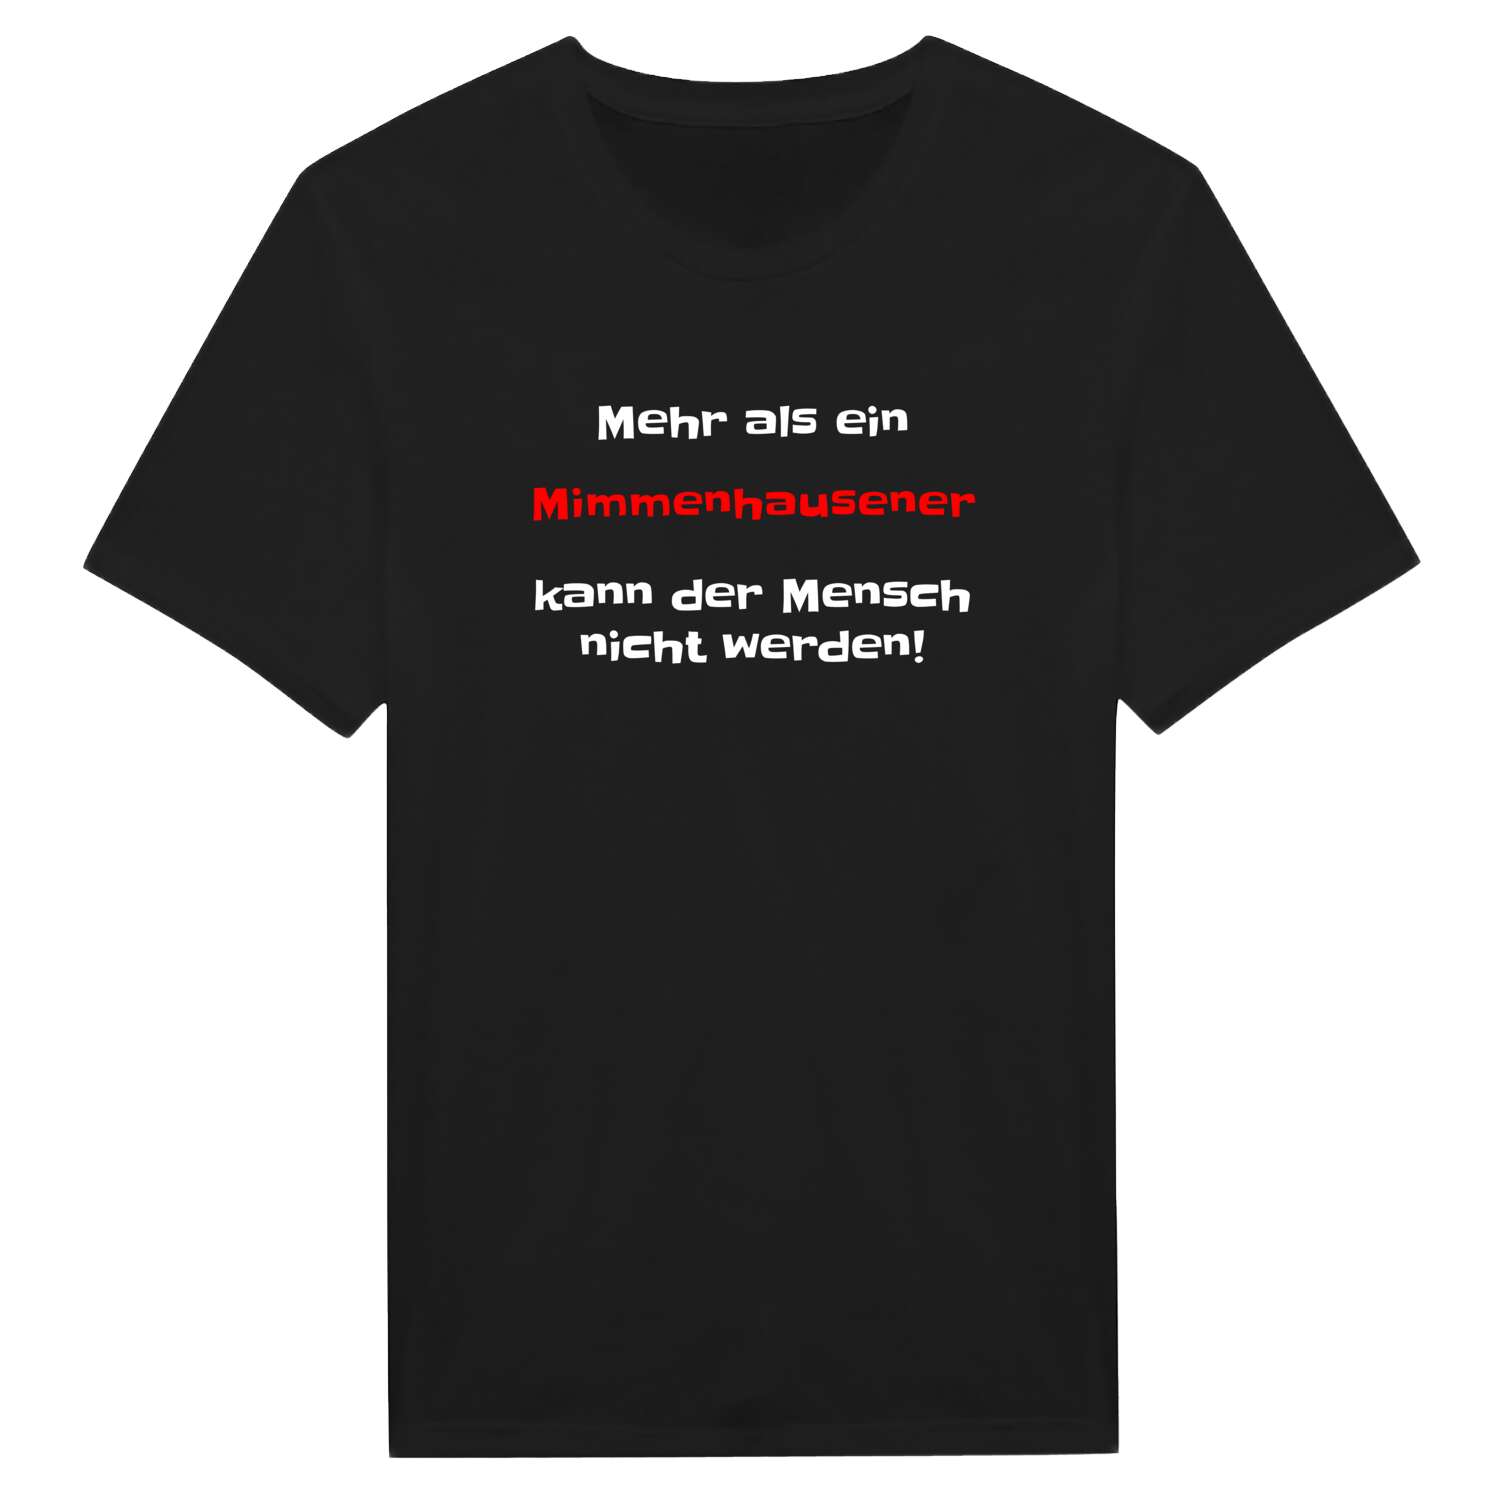 Mimmenhausen T-Shirt »Mehr als ein«